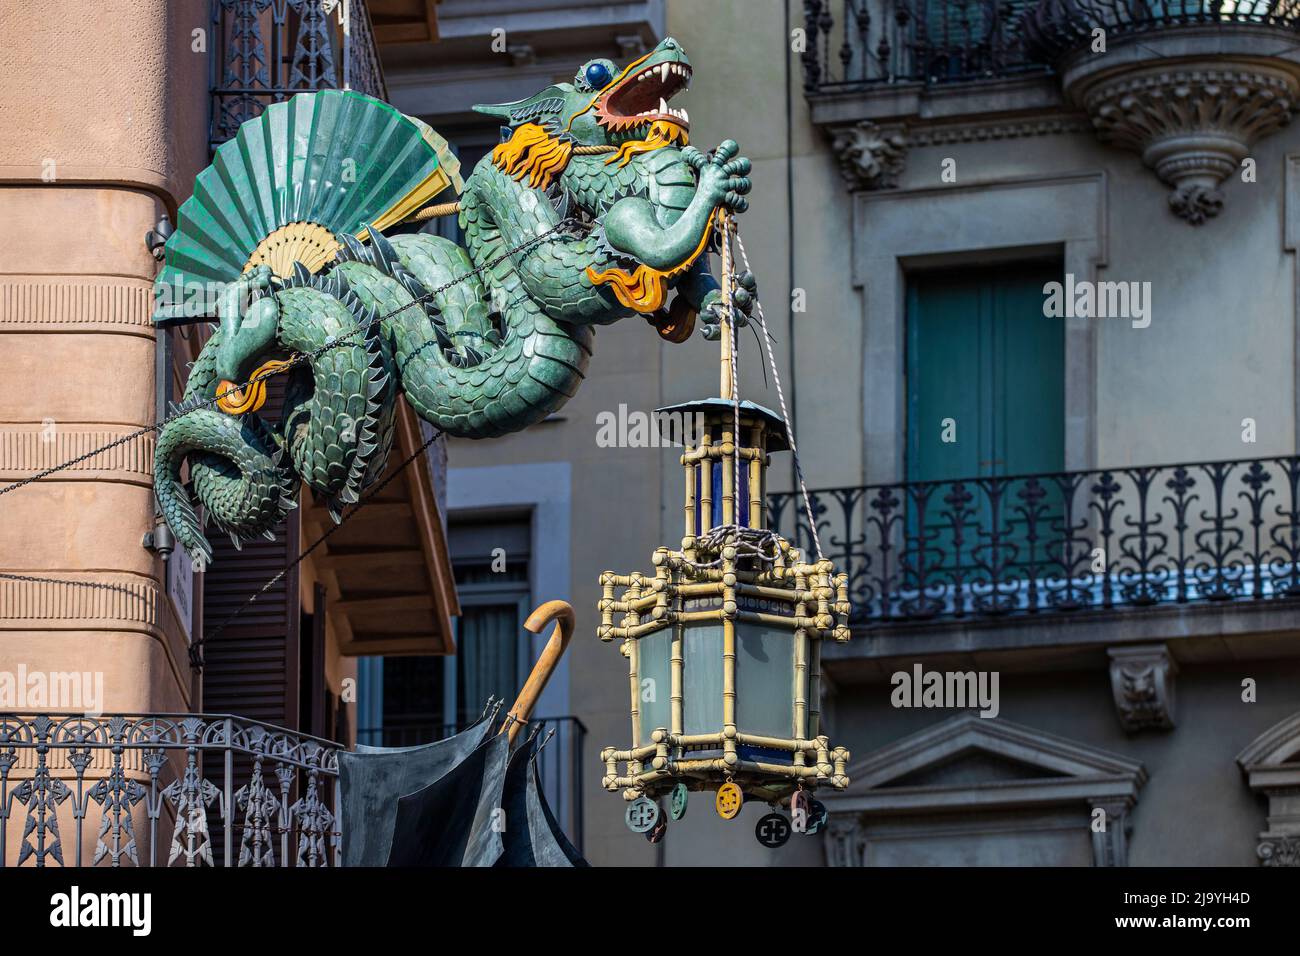 Art Deco Dragon sculpture on La Rambla in Barcelona, Spain Stock Photo